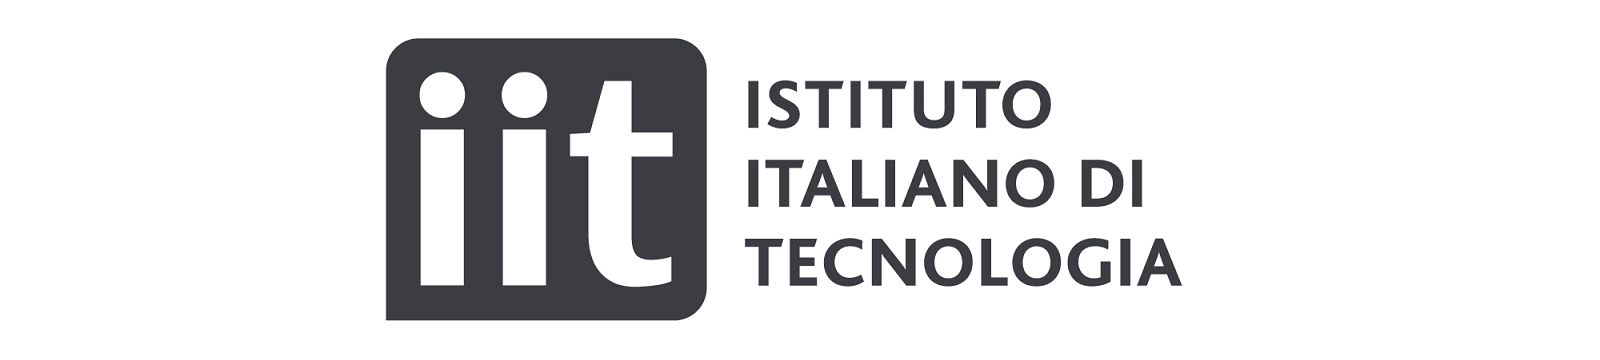 L’Istituto Italiano di Tecnologia ha aderito a ICDI